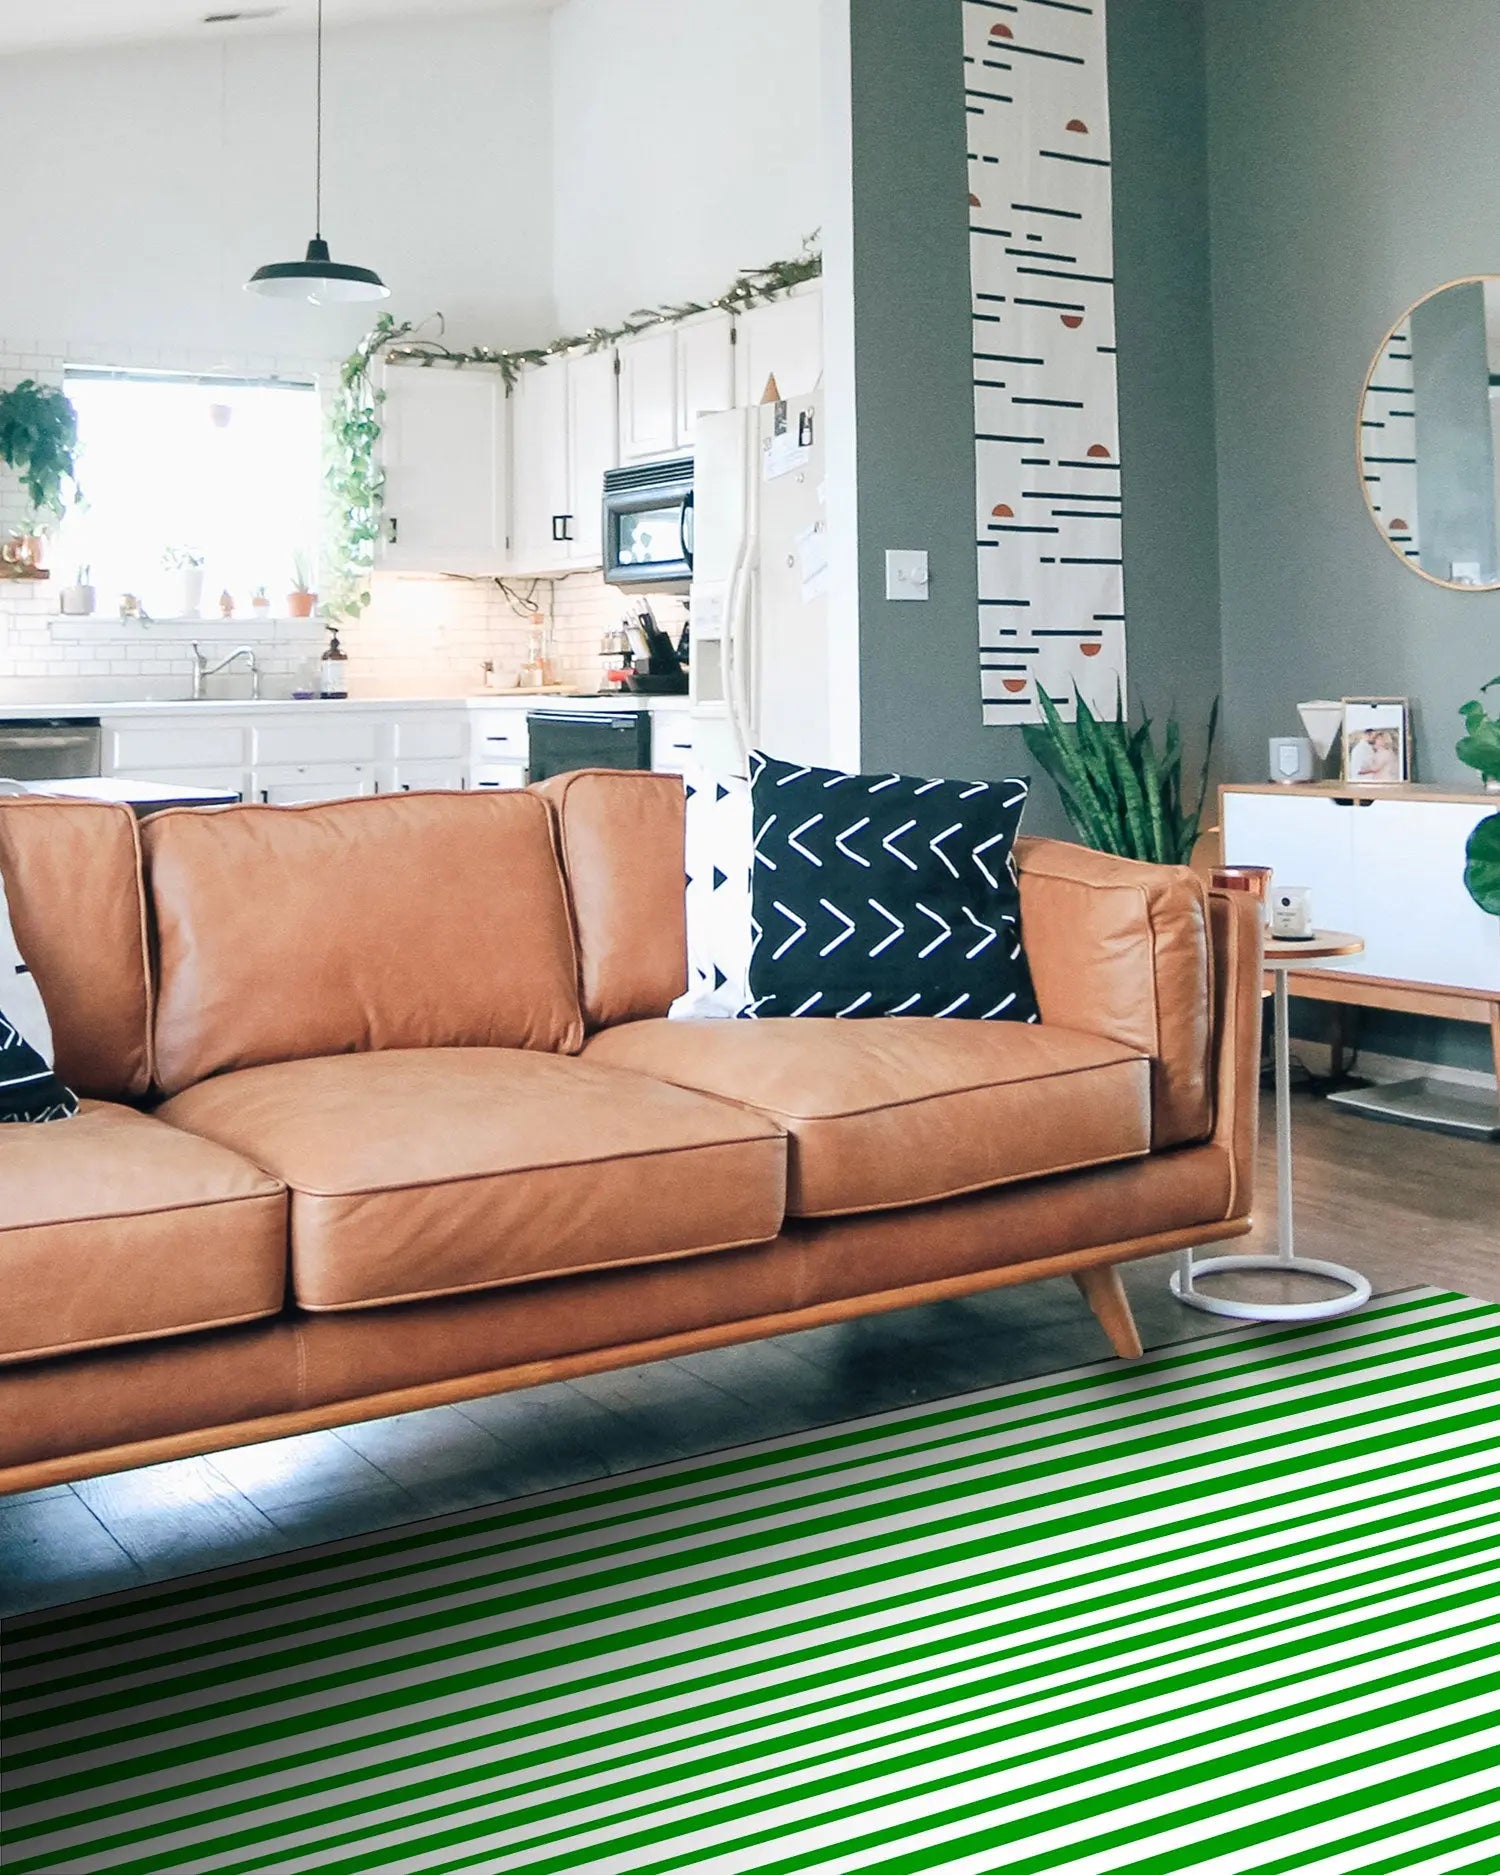 Alfombra Agatha Ruiz de la Prada Motivos Básicos Rayas Verdes Home & Living 